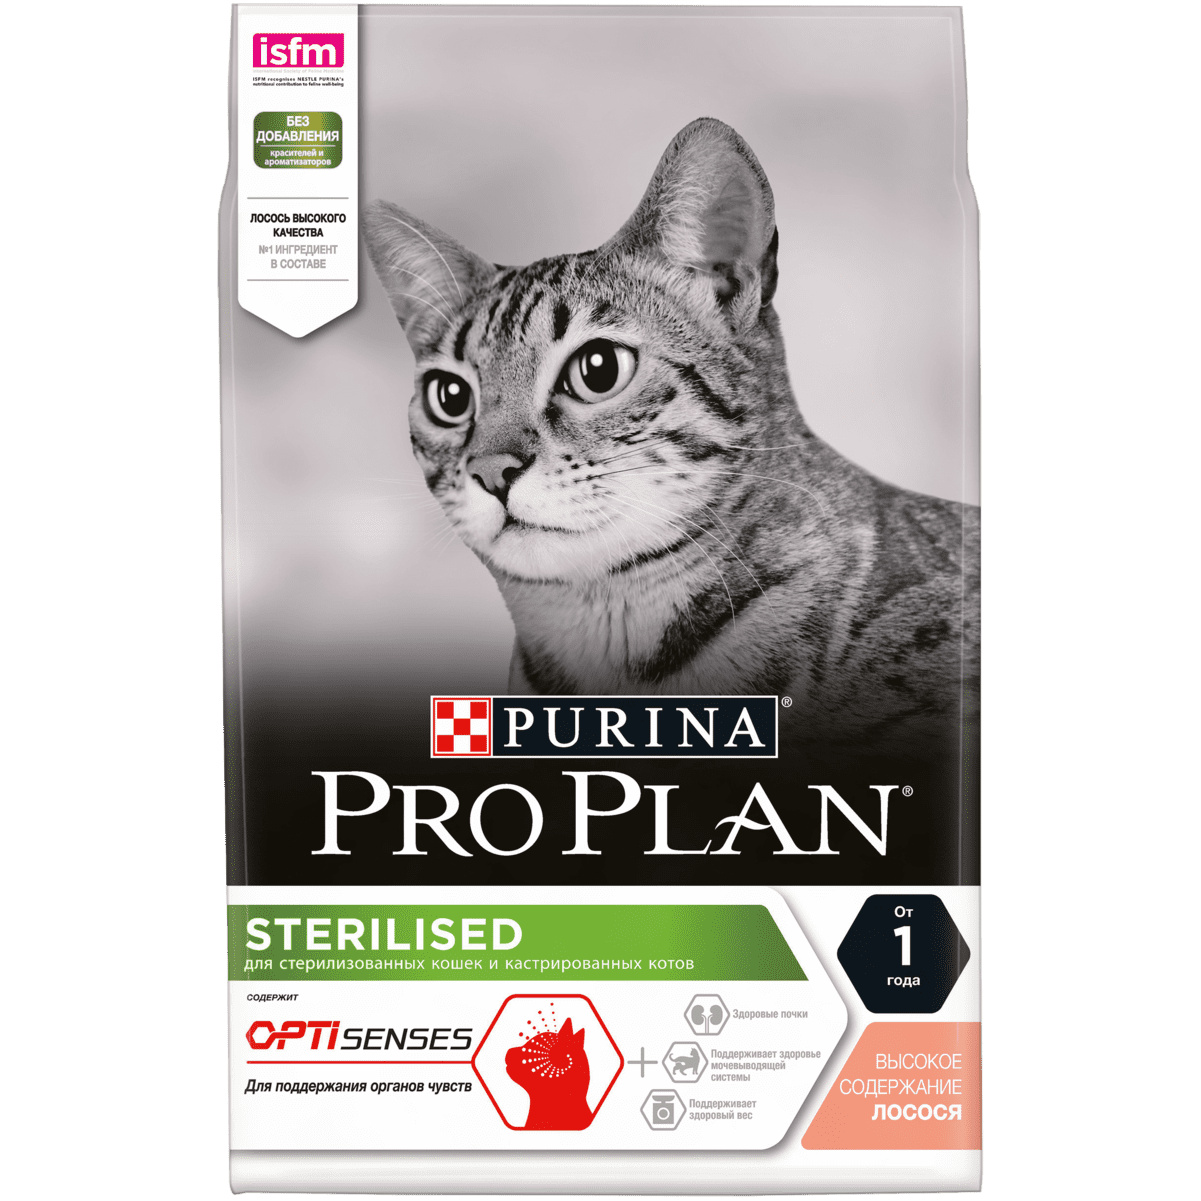 Корм Purina Pro Plan для стерилизованных кошек и кастрированных котов, для поддержания органов чувств, с высоким содержанием лосося (400 г)